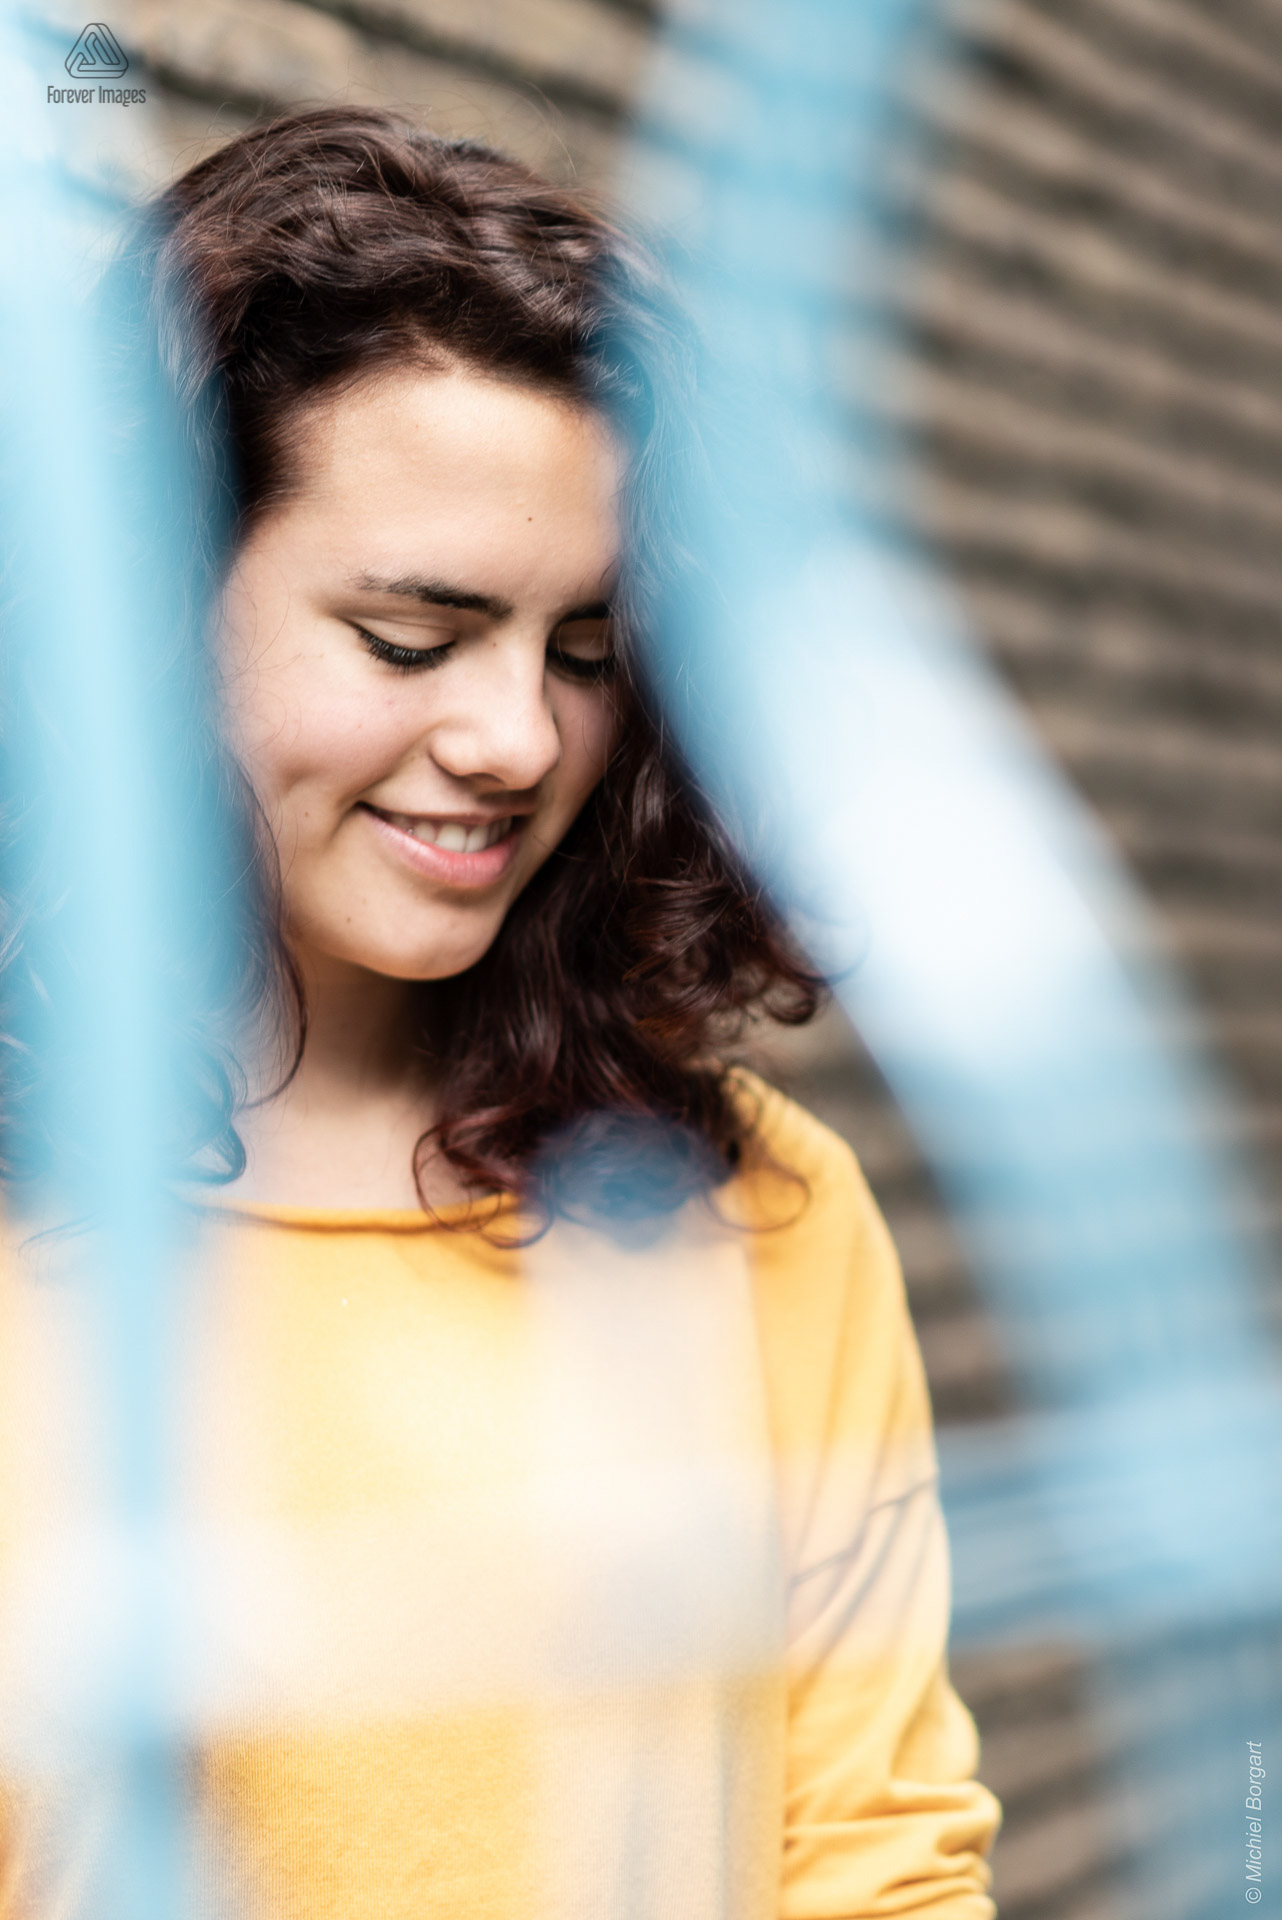 Portretfoto jonge dame tegen muur achter blauw hek zachte glimlach | Tessa | Portretfotograaf Michiel Borgart - Forever Images.